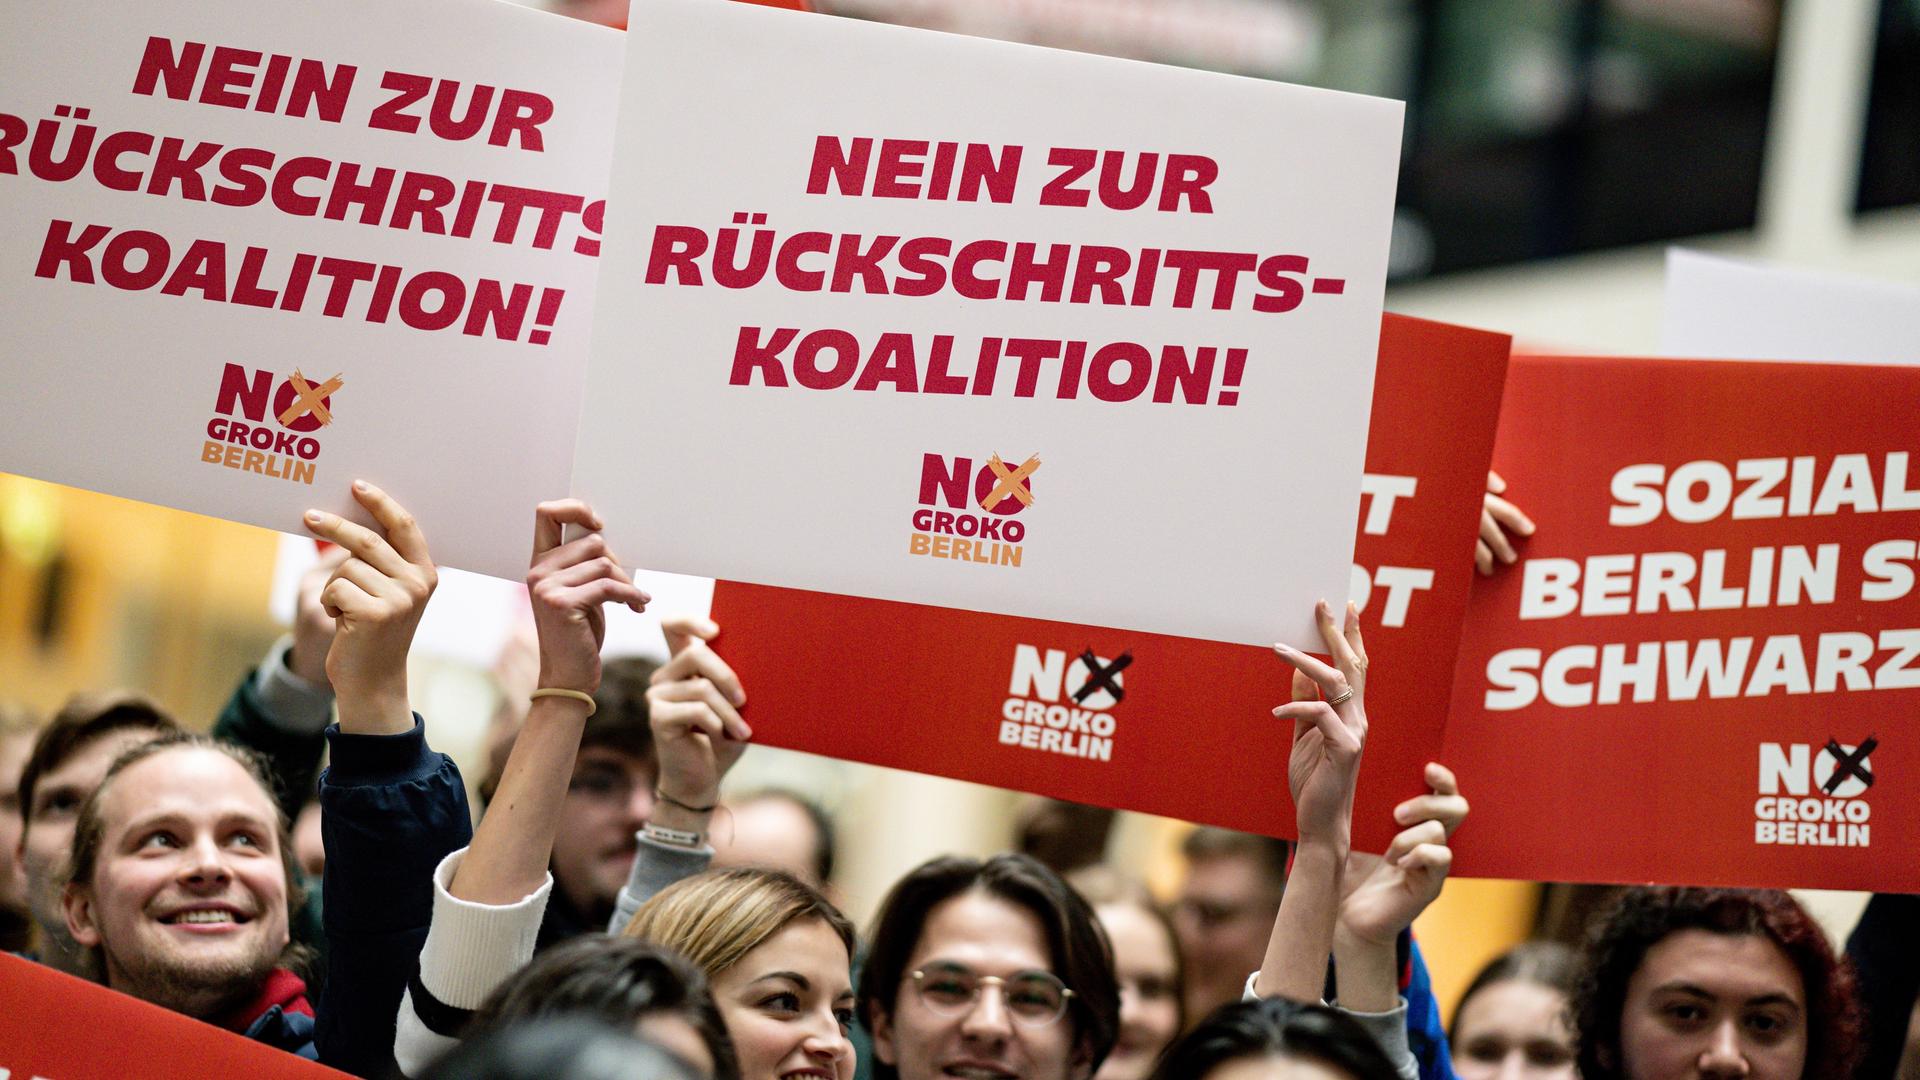 Delegierte halten am Rande der Landesdelegiertenkonferenz der Jusos Berlin im Willy-Brandt Haus Schilder mit der Aufschrift "Soziales Berlin statt Schwarz Rot" und "Nein zur Rückschritts-Koalition" in die Höhe.